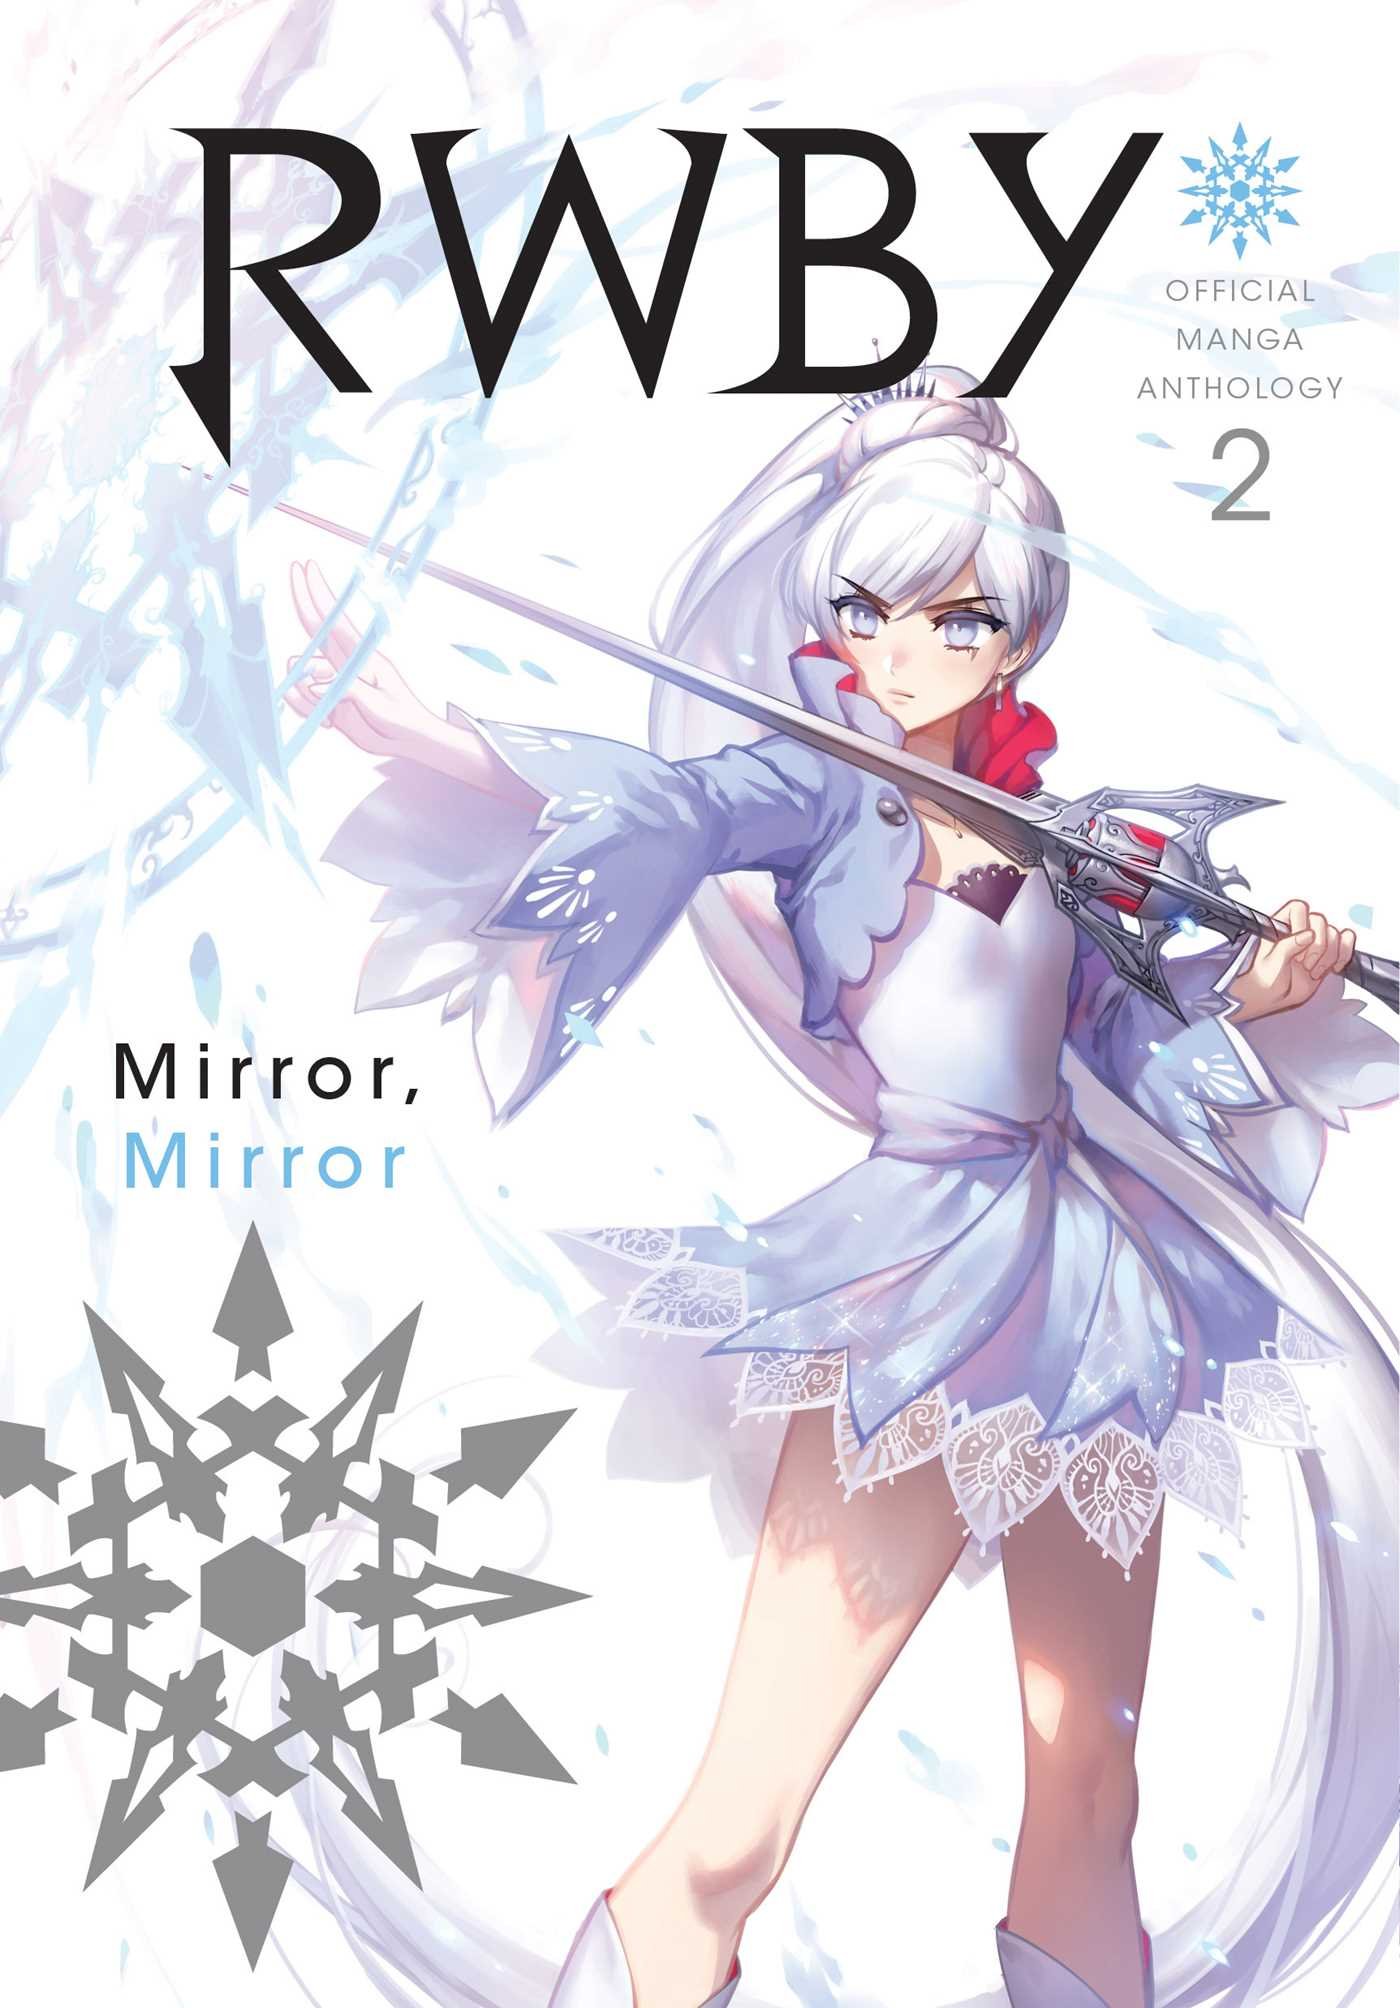 RWBY: Official Manga Anthology - Volume 2 | Monty Oum image11